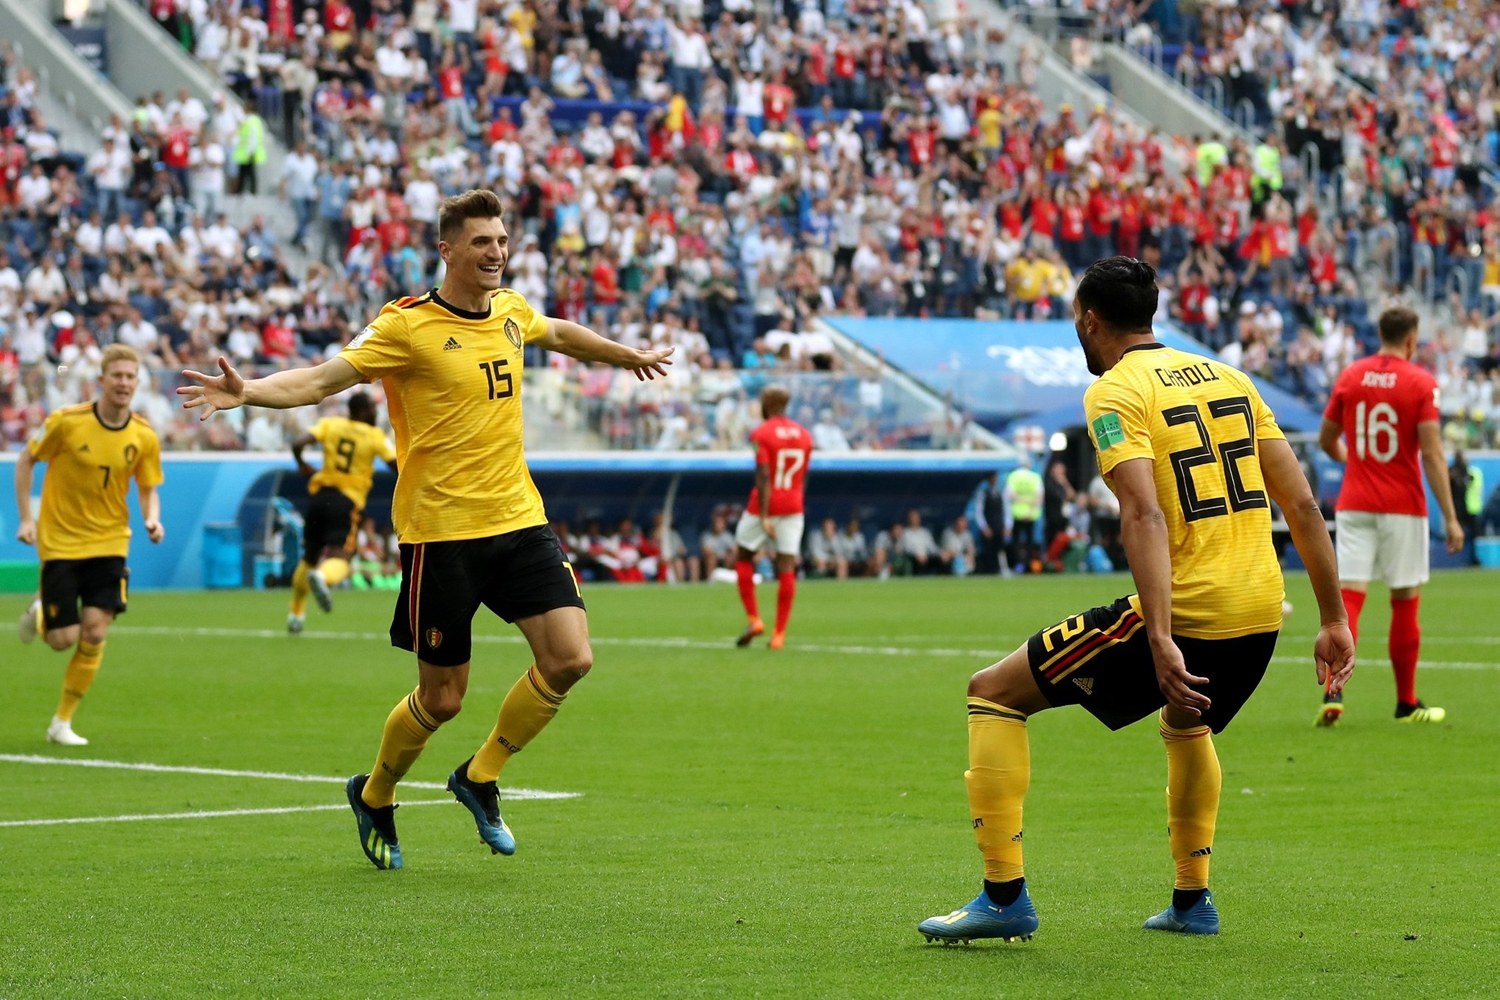 Seleção belga conquista terceiro lugar na Copa do Mundo na Rússia